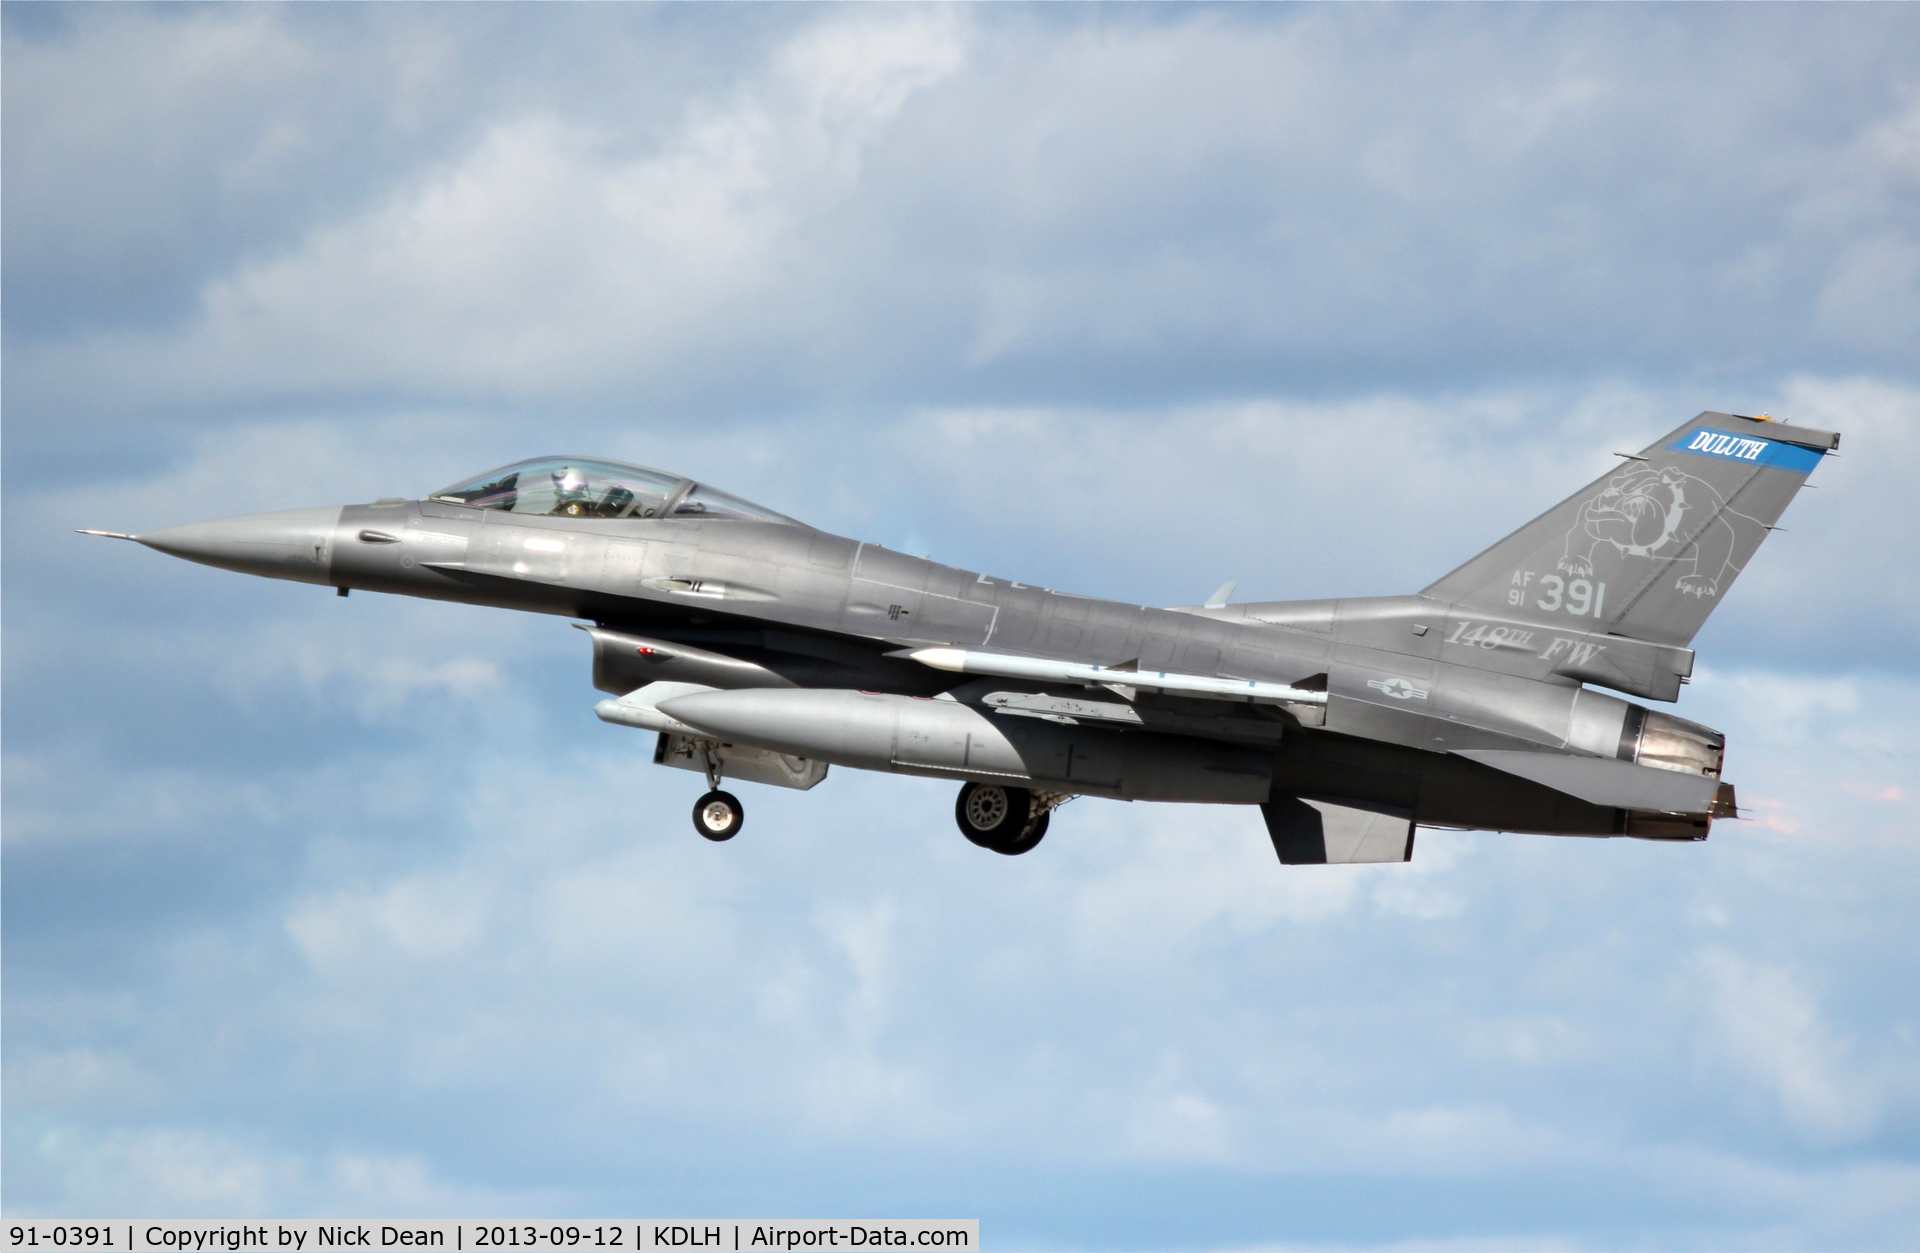 91-0391, 1991 General Dynamics F-16CJ Fighting Falcon C/N CC-89, KDLH/DLH